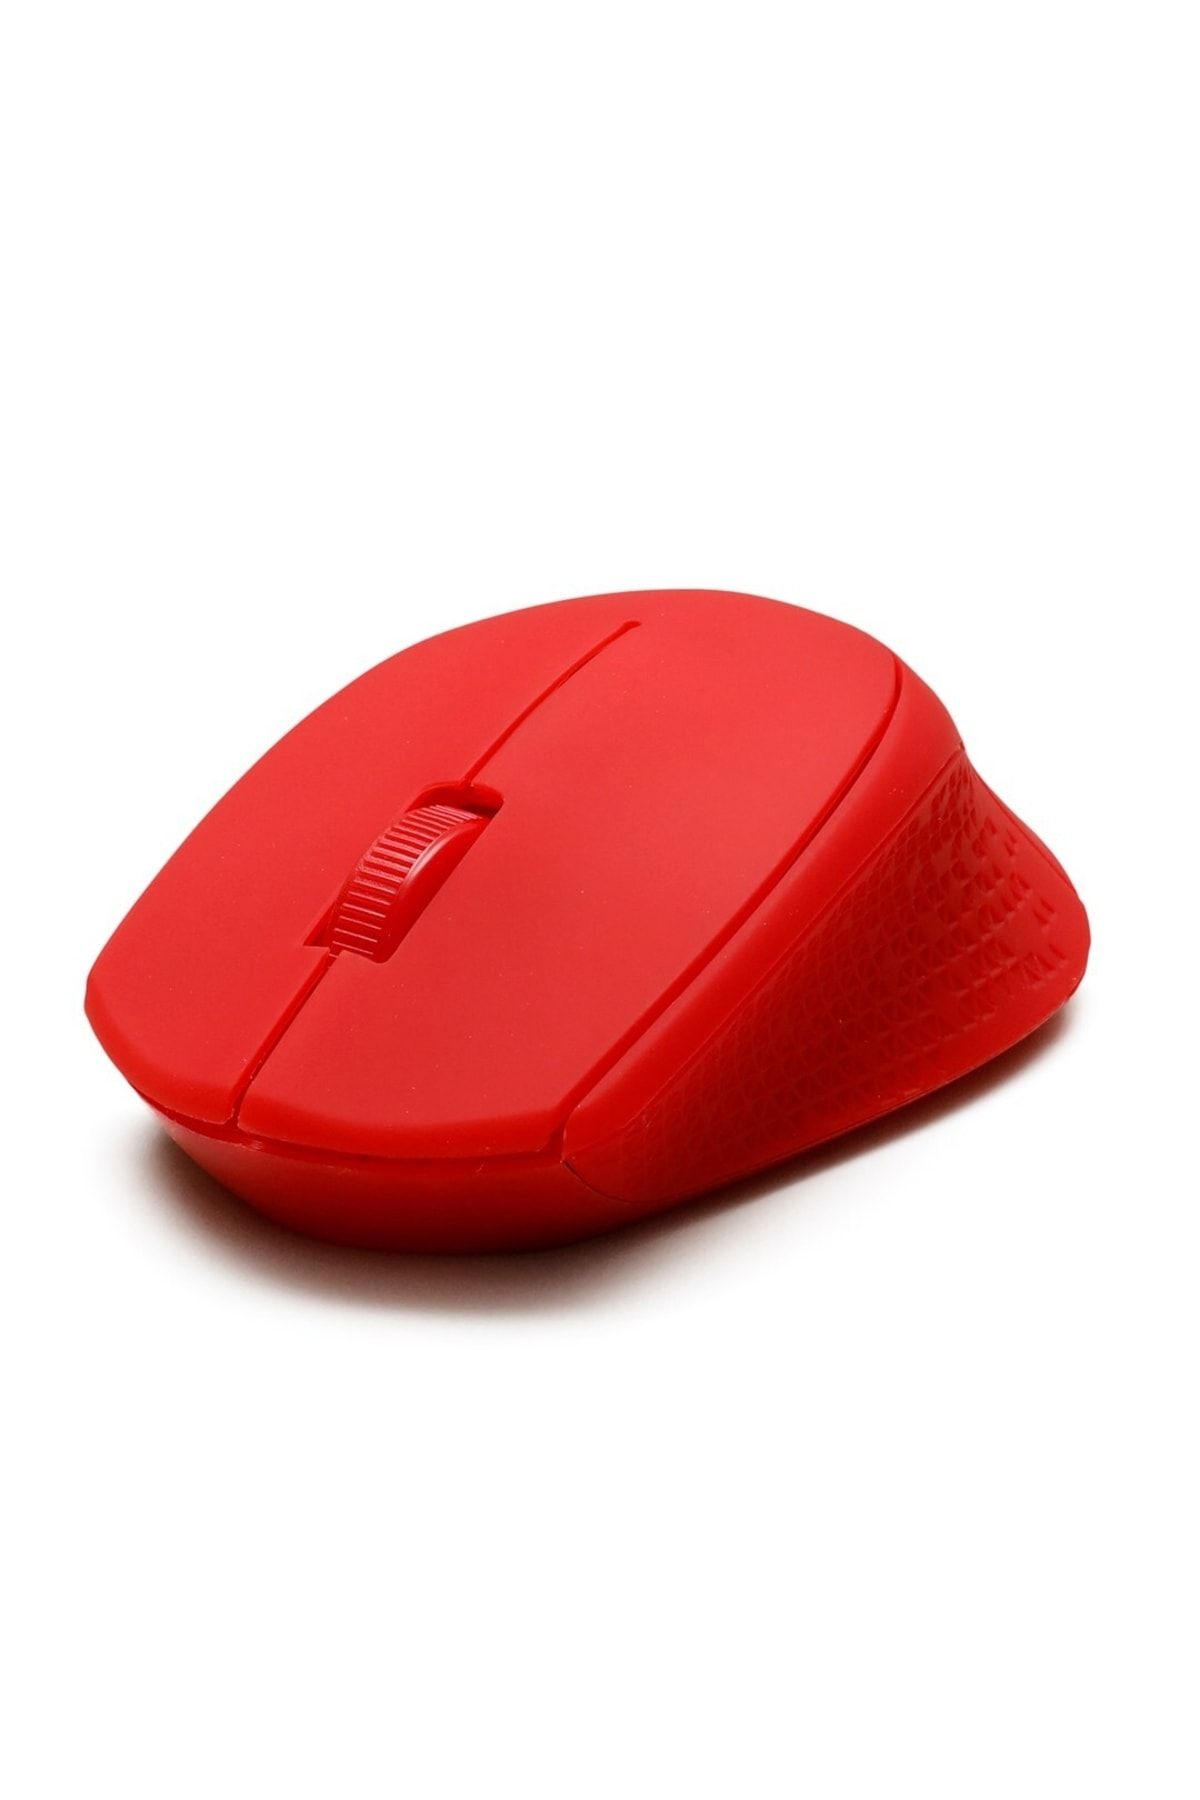 Preo M20k 2.4ghz Usb 2.0 Wireless Kablosuz Mouse Kırmızı